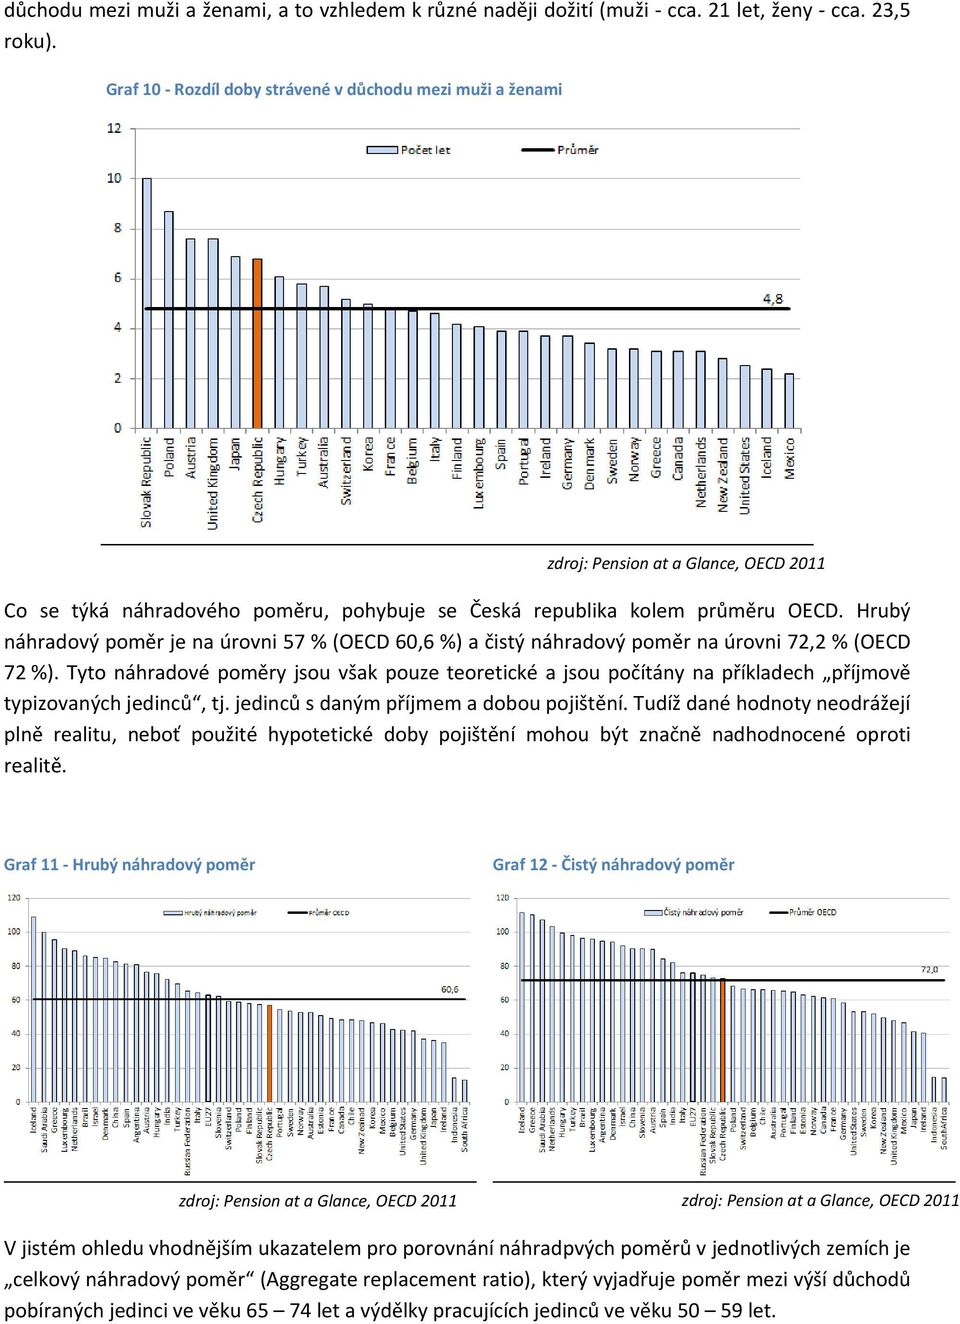 Hrubý náhradový poměr je na úrovni 57 % (OECD 60,6 %) a čistý náhradový poměr na úrovni 72,2 % (OECD 72 %).